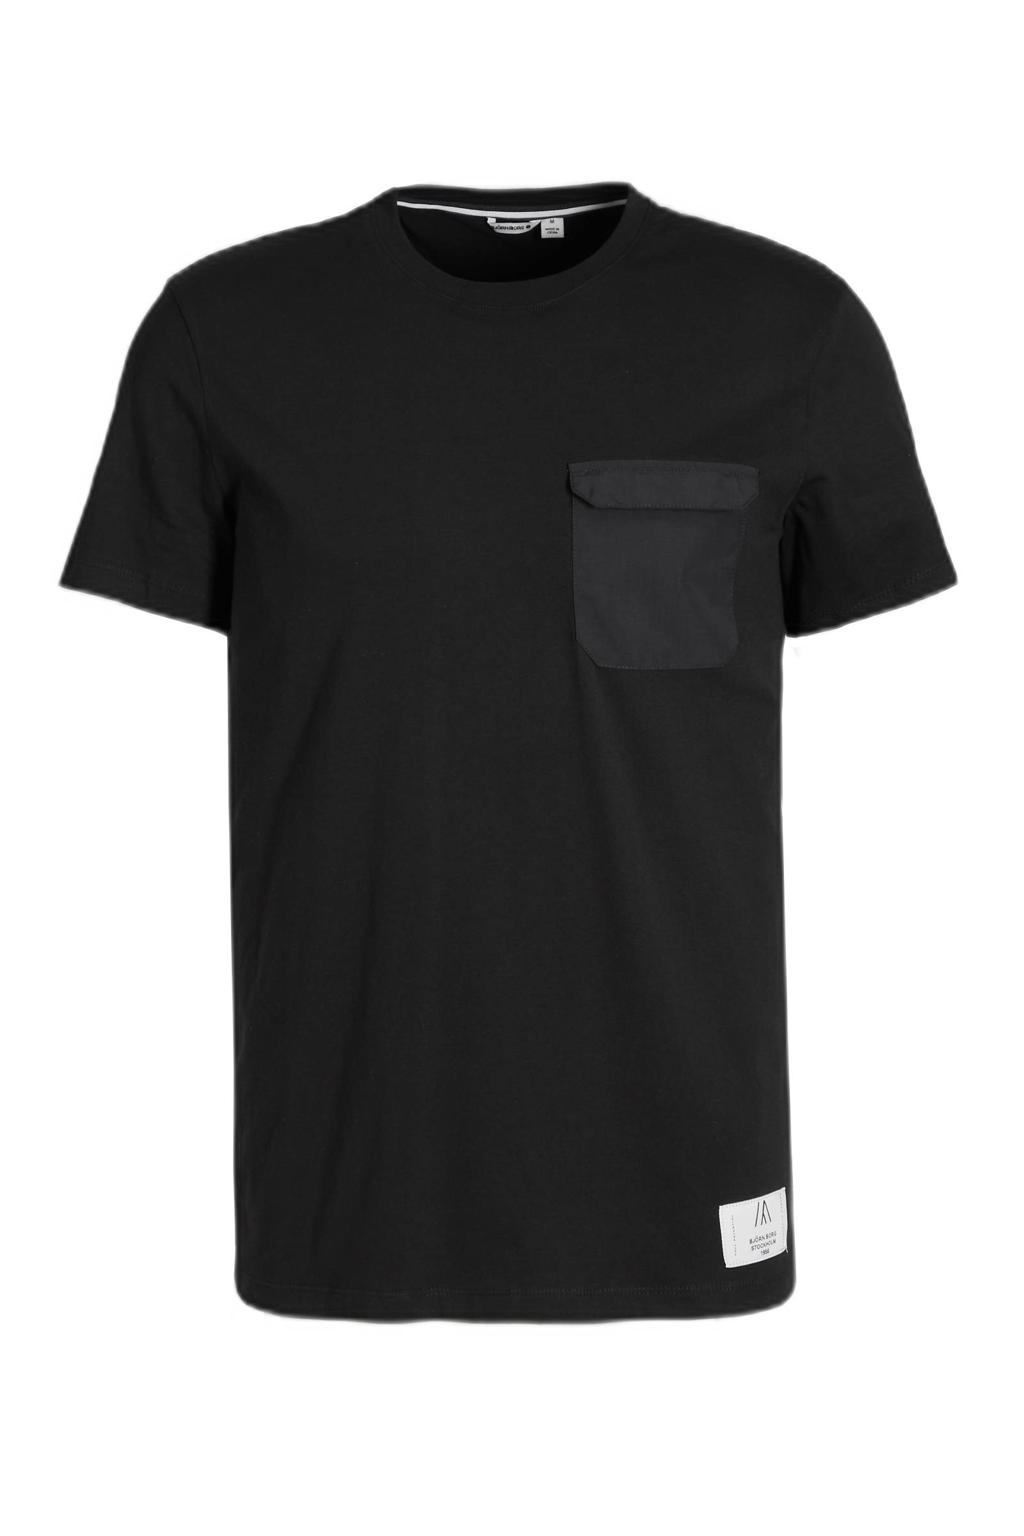 Zwarte heren Björn Borg sport T-shirt Sthlm van katoen met logo dessin, lange mouwen en ronde hals